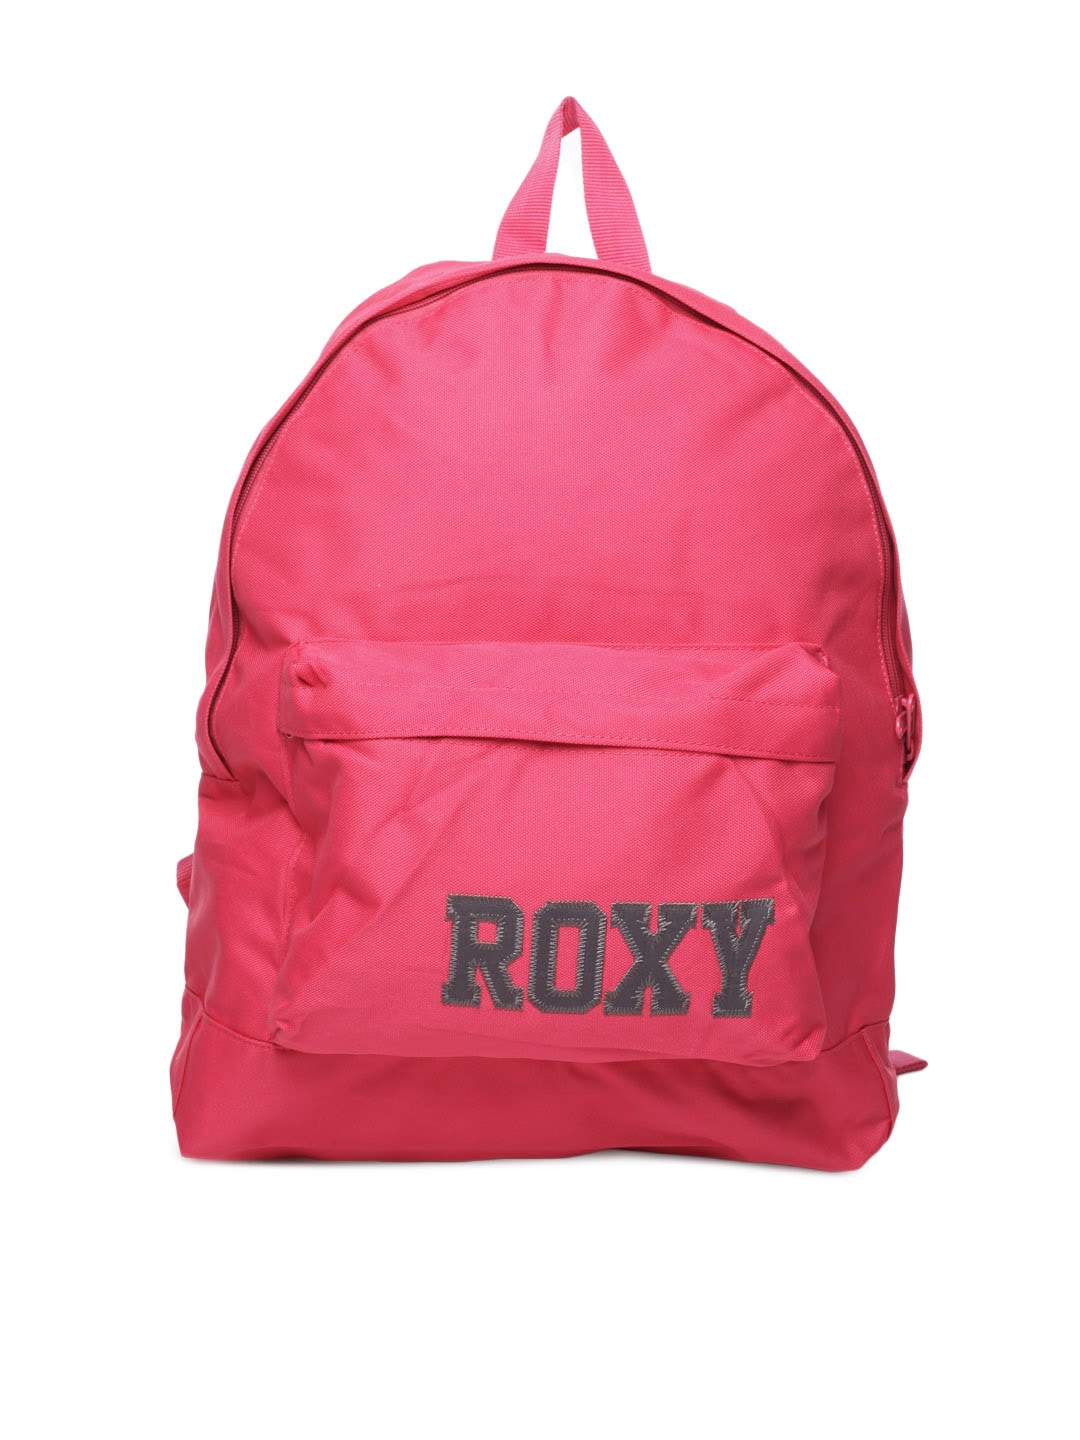 Roxy Women Pink Backpack